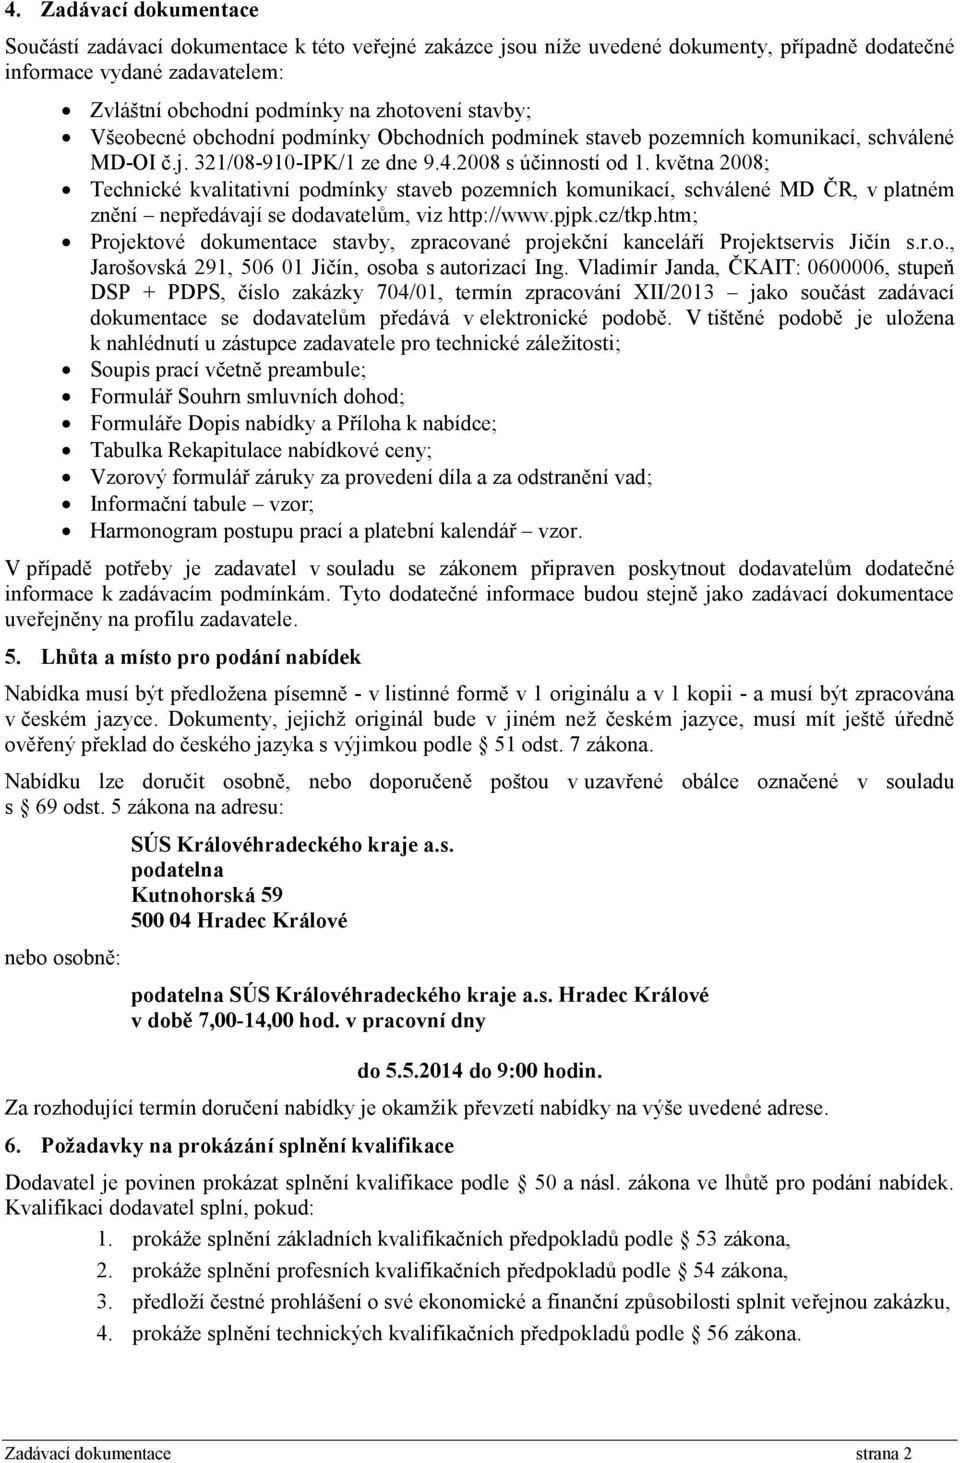 května 2008; Technické kvalitativní podmínky staveb pozemních komunikací, schválené MD ČR, v platném znění nepředávají se dodavatelům, viz http://www.pjpk.cz/tkp.